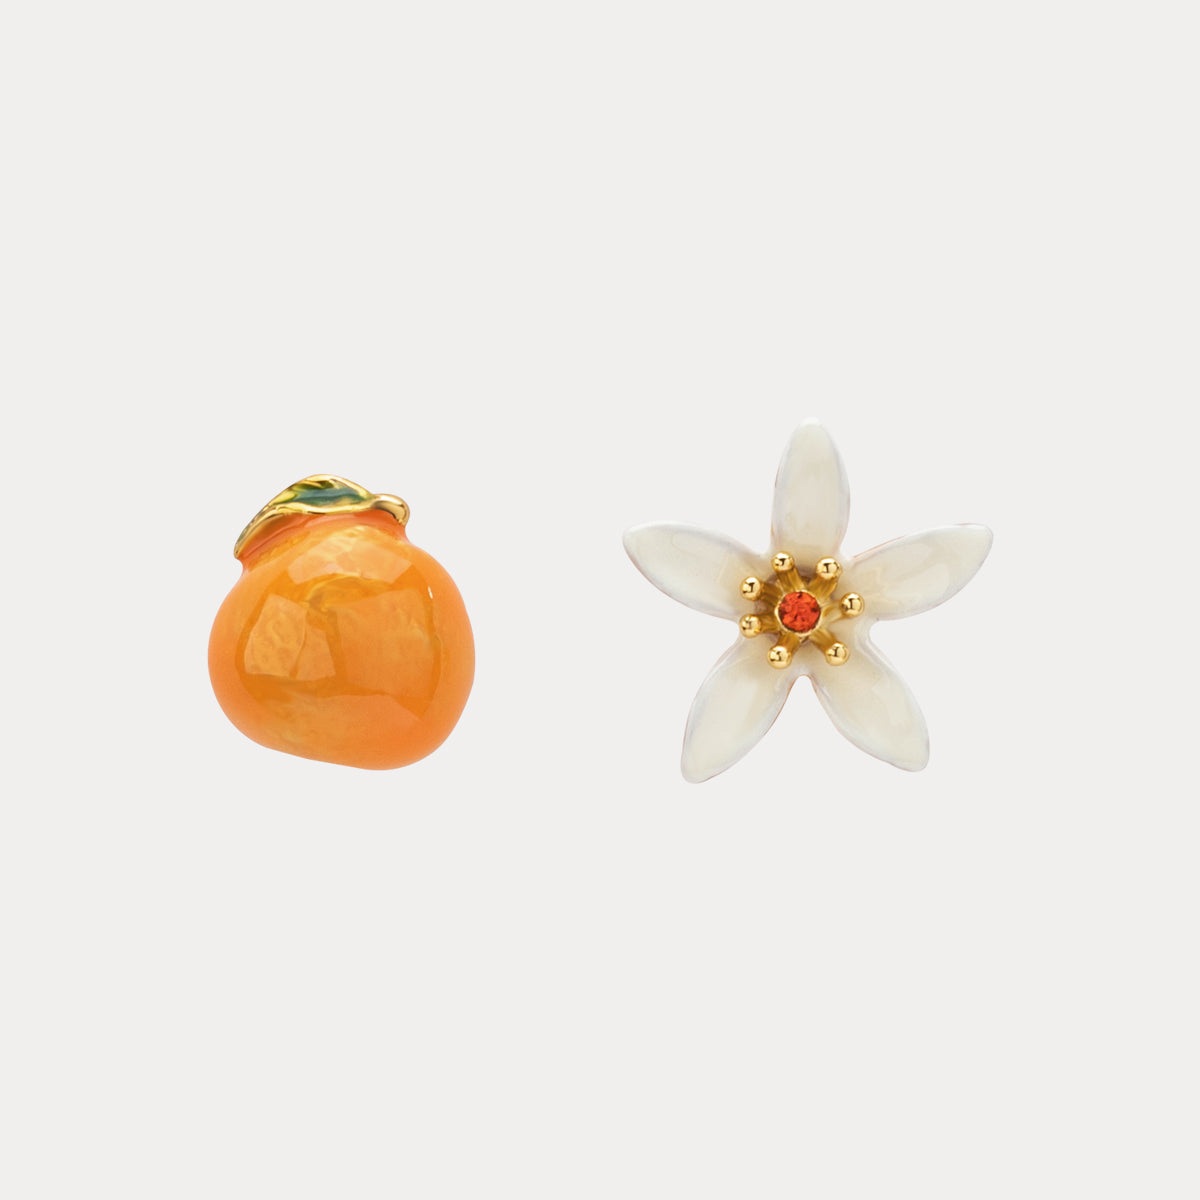 Selenichast orange flower earrings 1